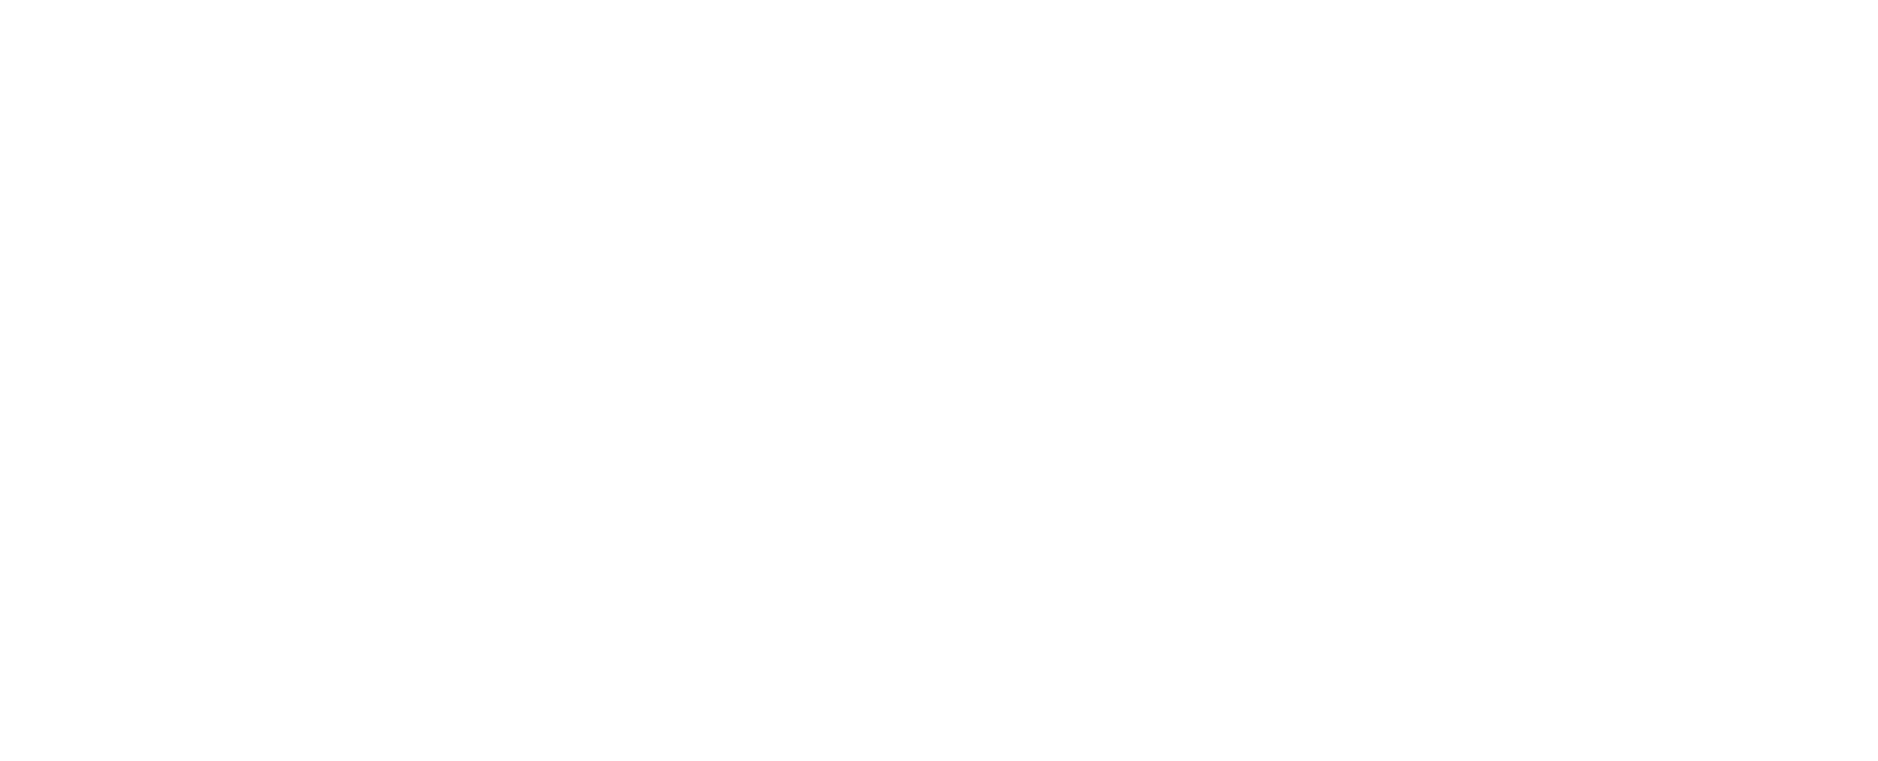 Eleanor Lloyd Productions